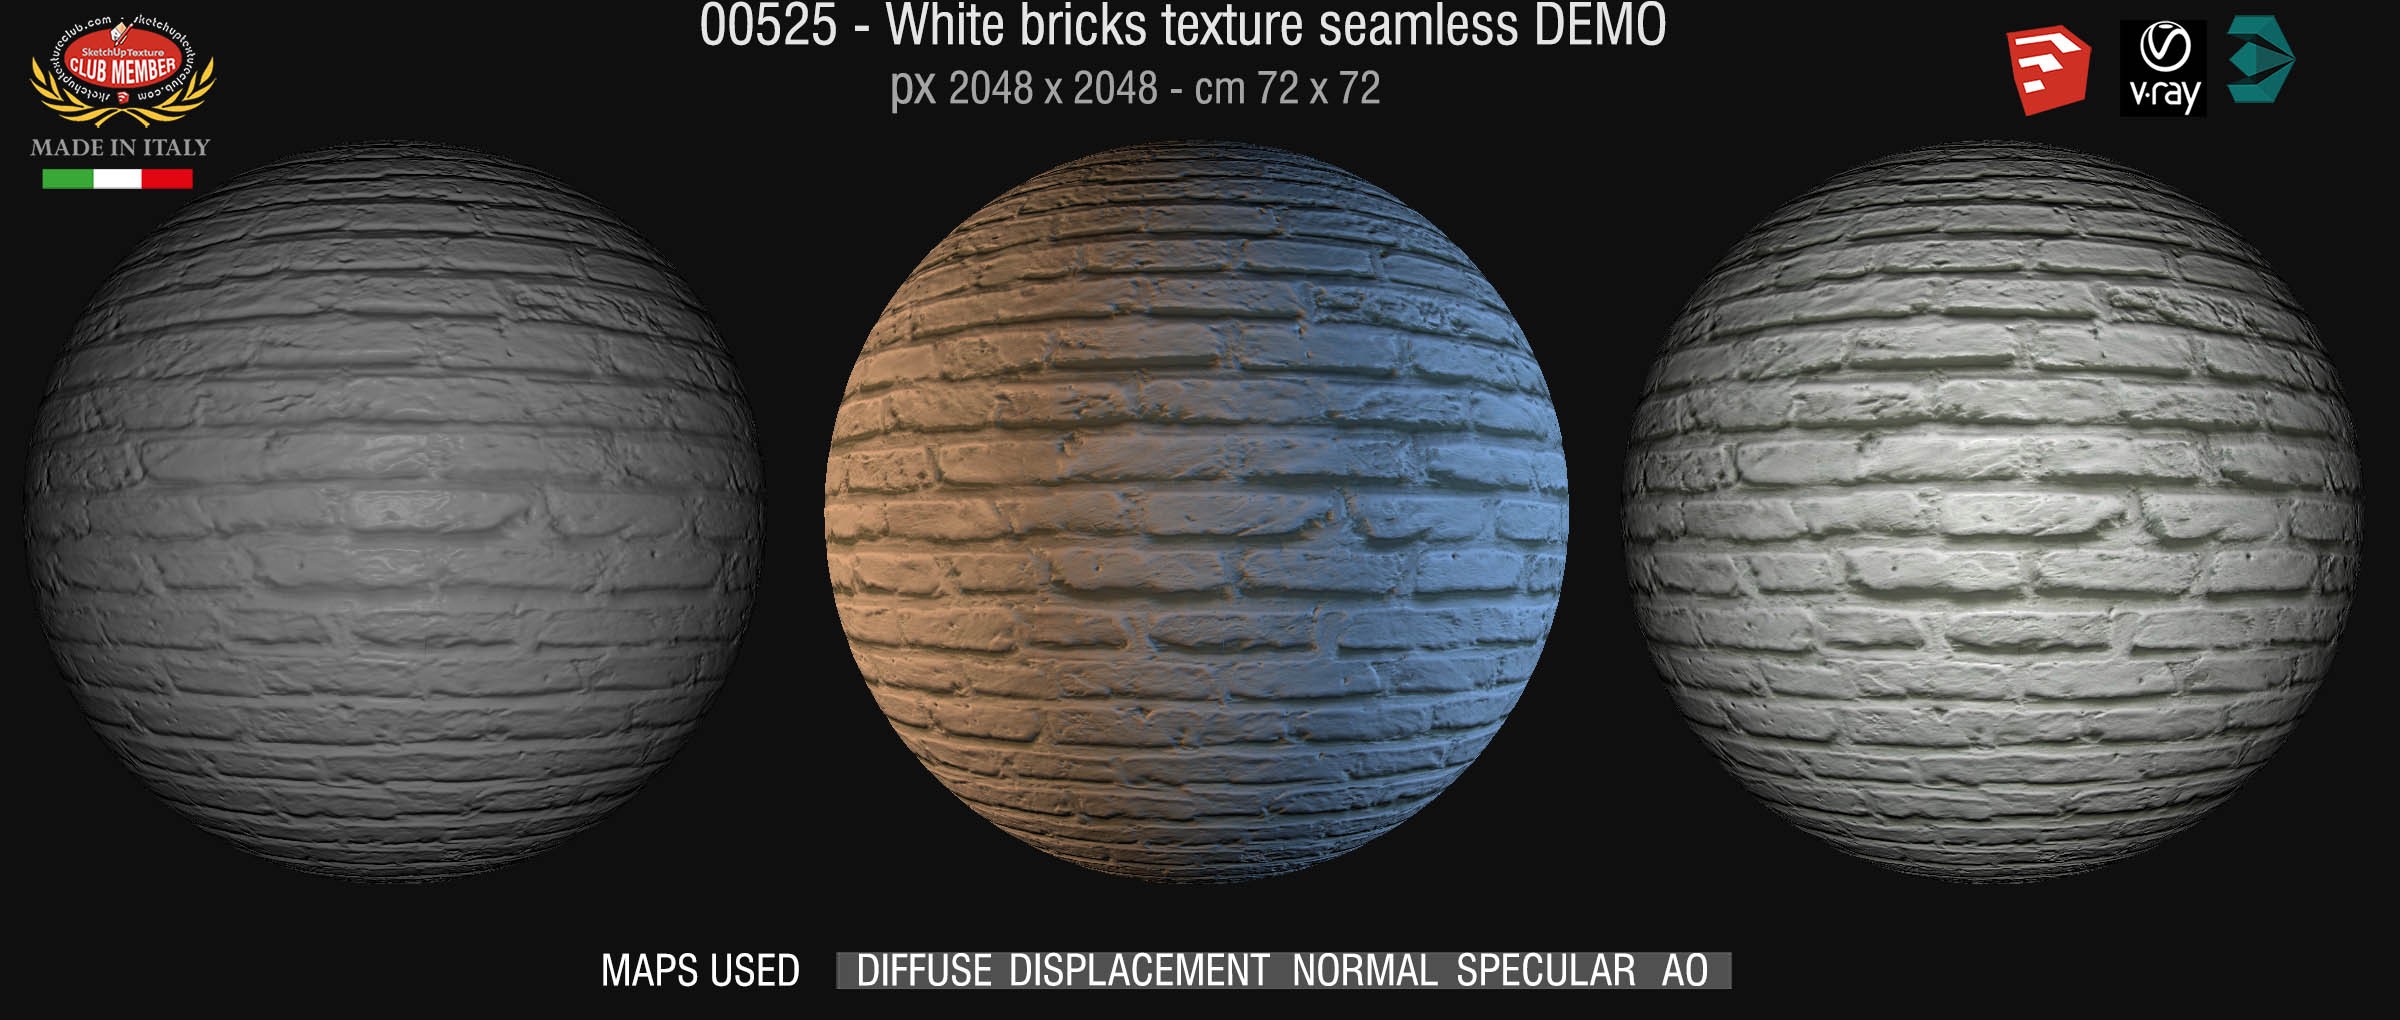 00525 White bricks texture seamless + maps DEMO